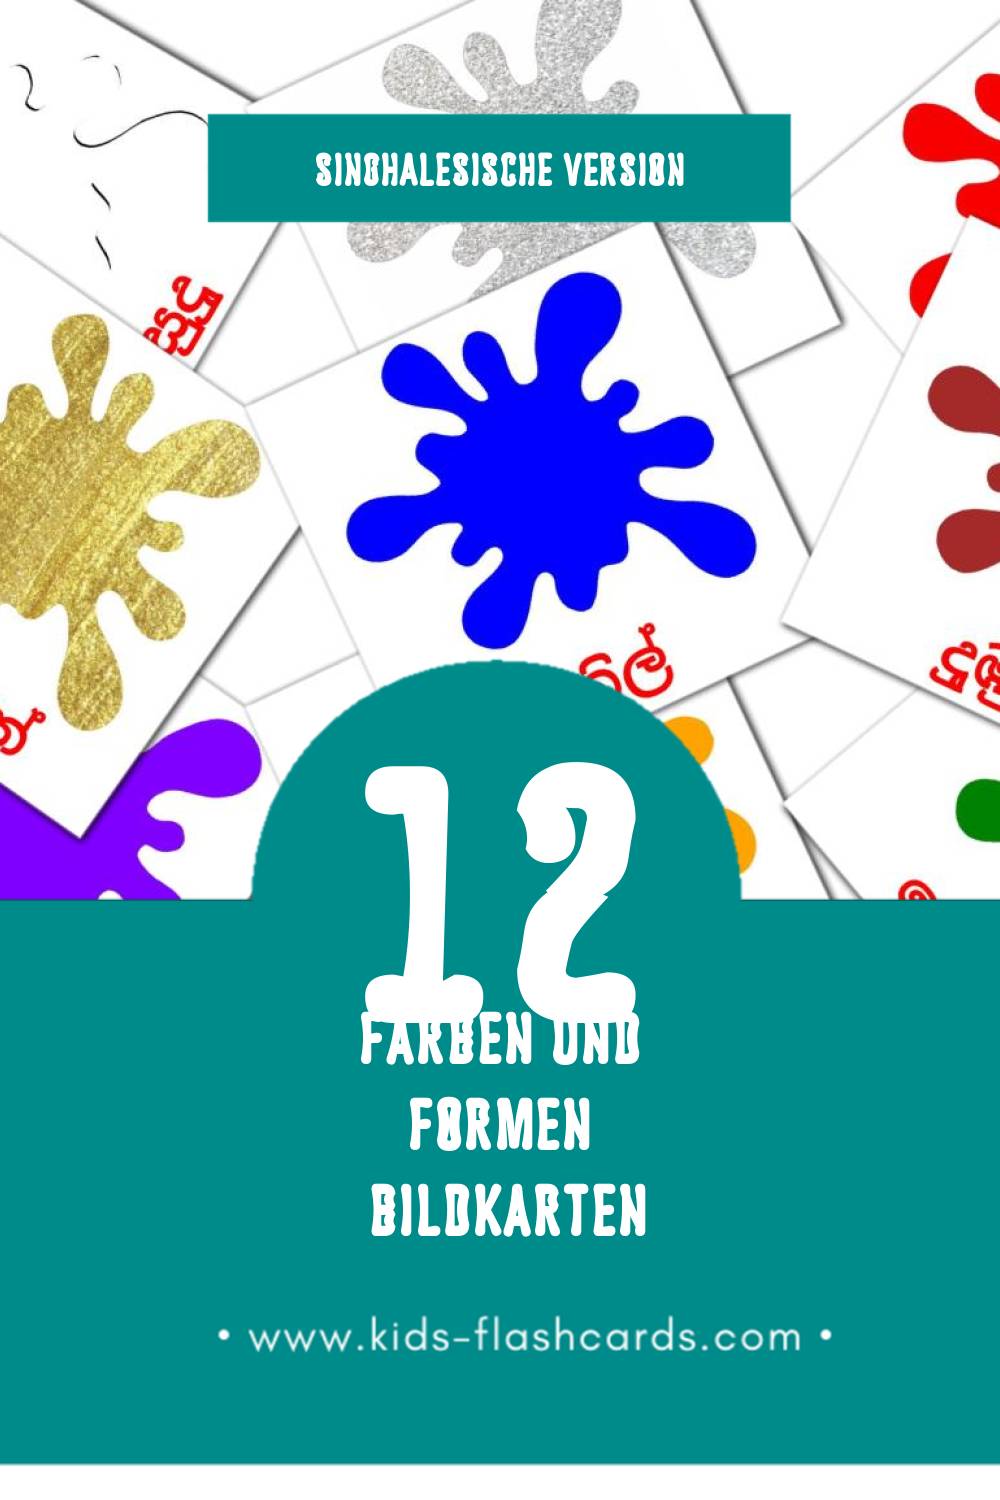 Visual හැඩය සහ වර්ණය Flashcards für Kleinkinder (12 Karten in Singhalesisch)